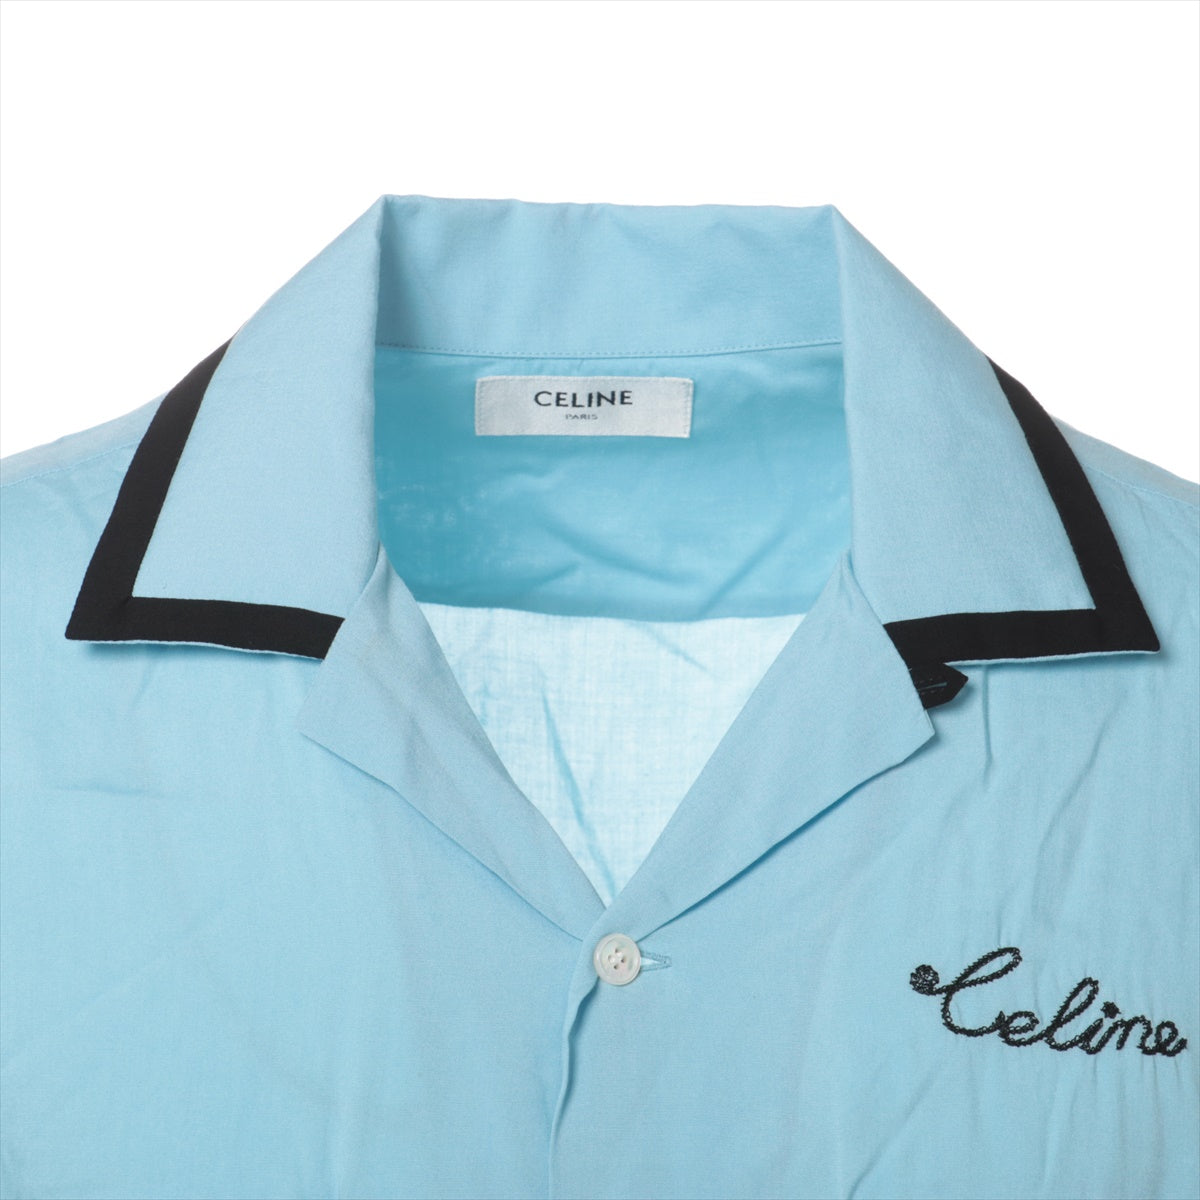 セリーヌ レーヨン シャツ 36 メンズ ブルー 2C516852C ルーズボーリングシャツ